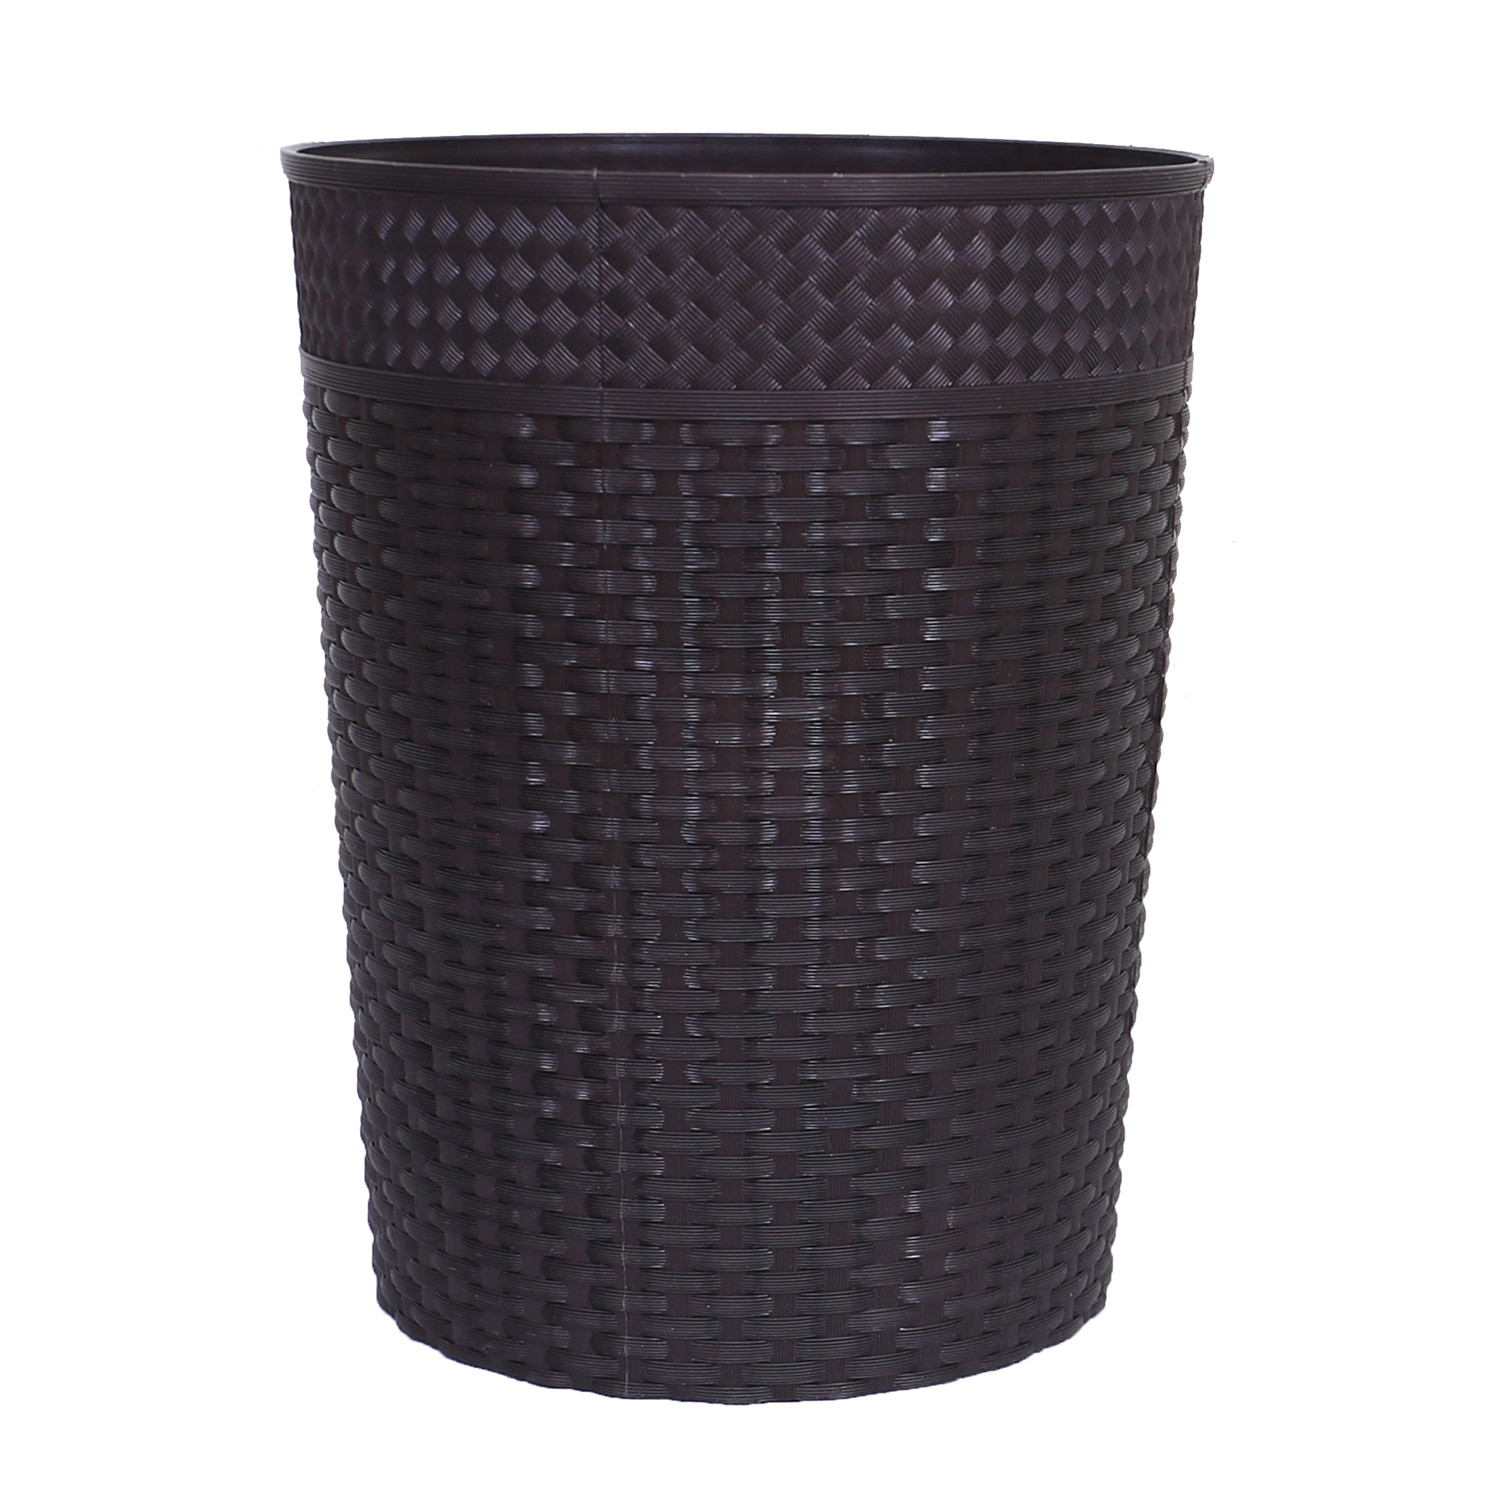 Kuber Industries Dustbin|Plastic Dustbin|Dustbins for Kitchen|Dustbin For Bedroom,Hall|Dustbin For office|10 Litre Dustbin (Brown)